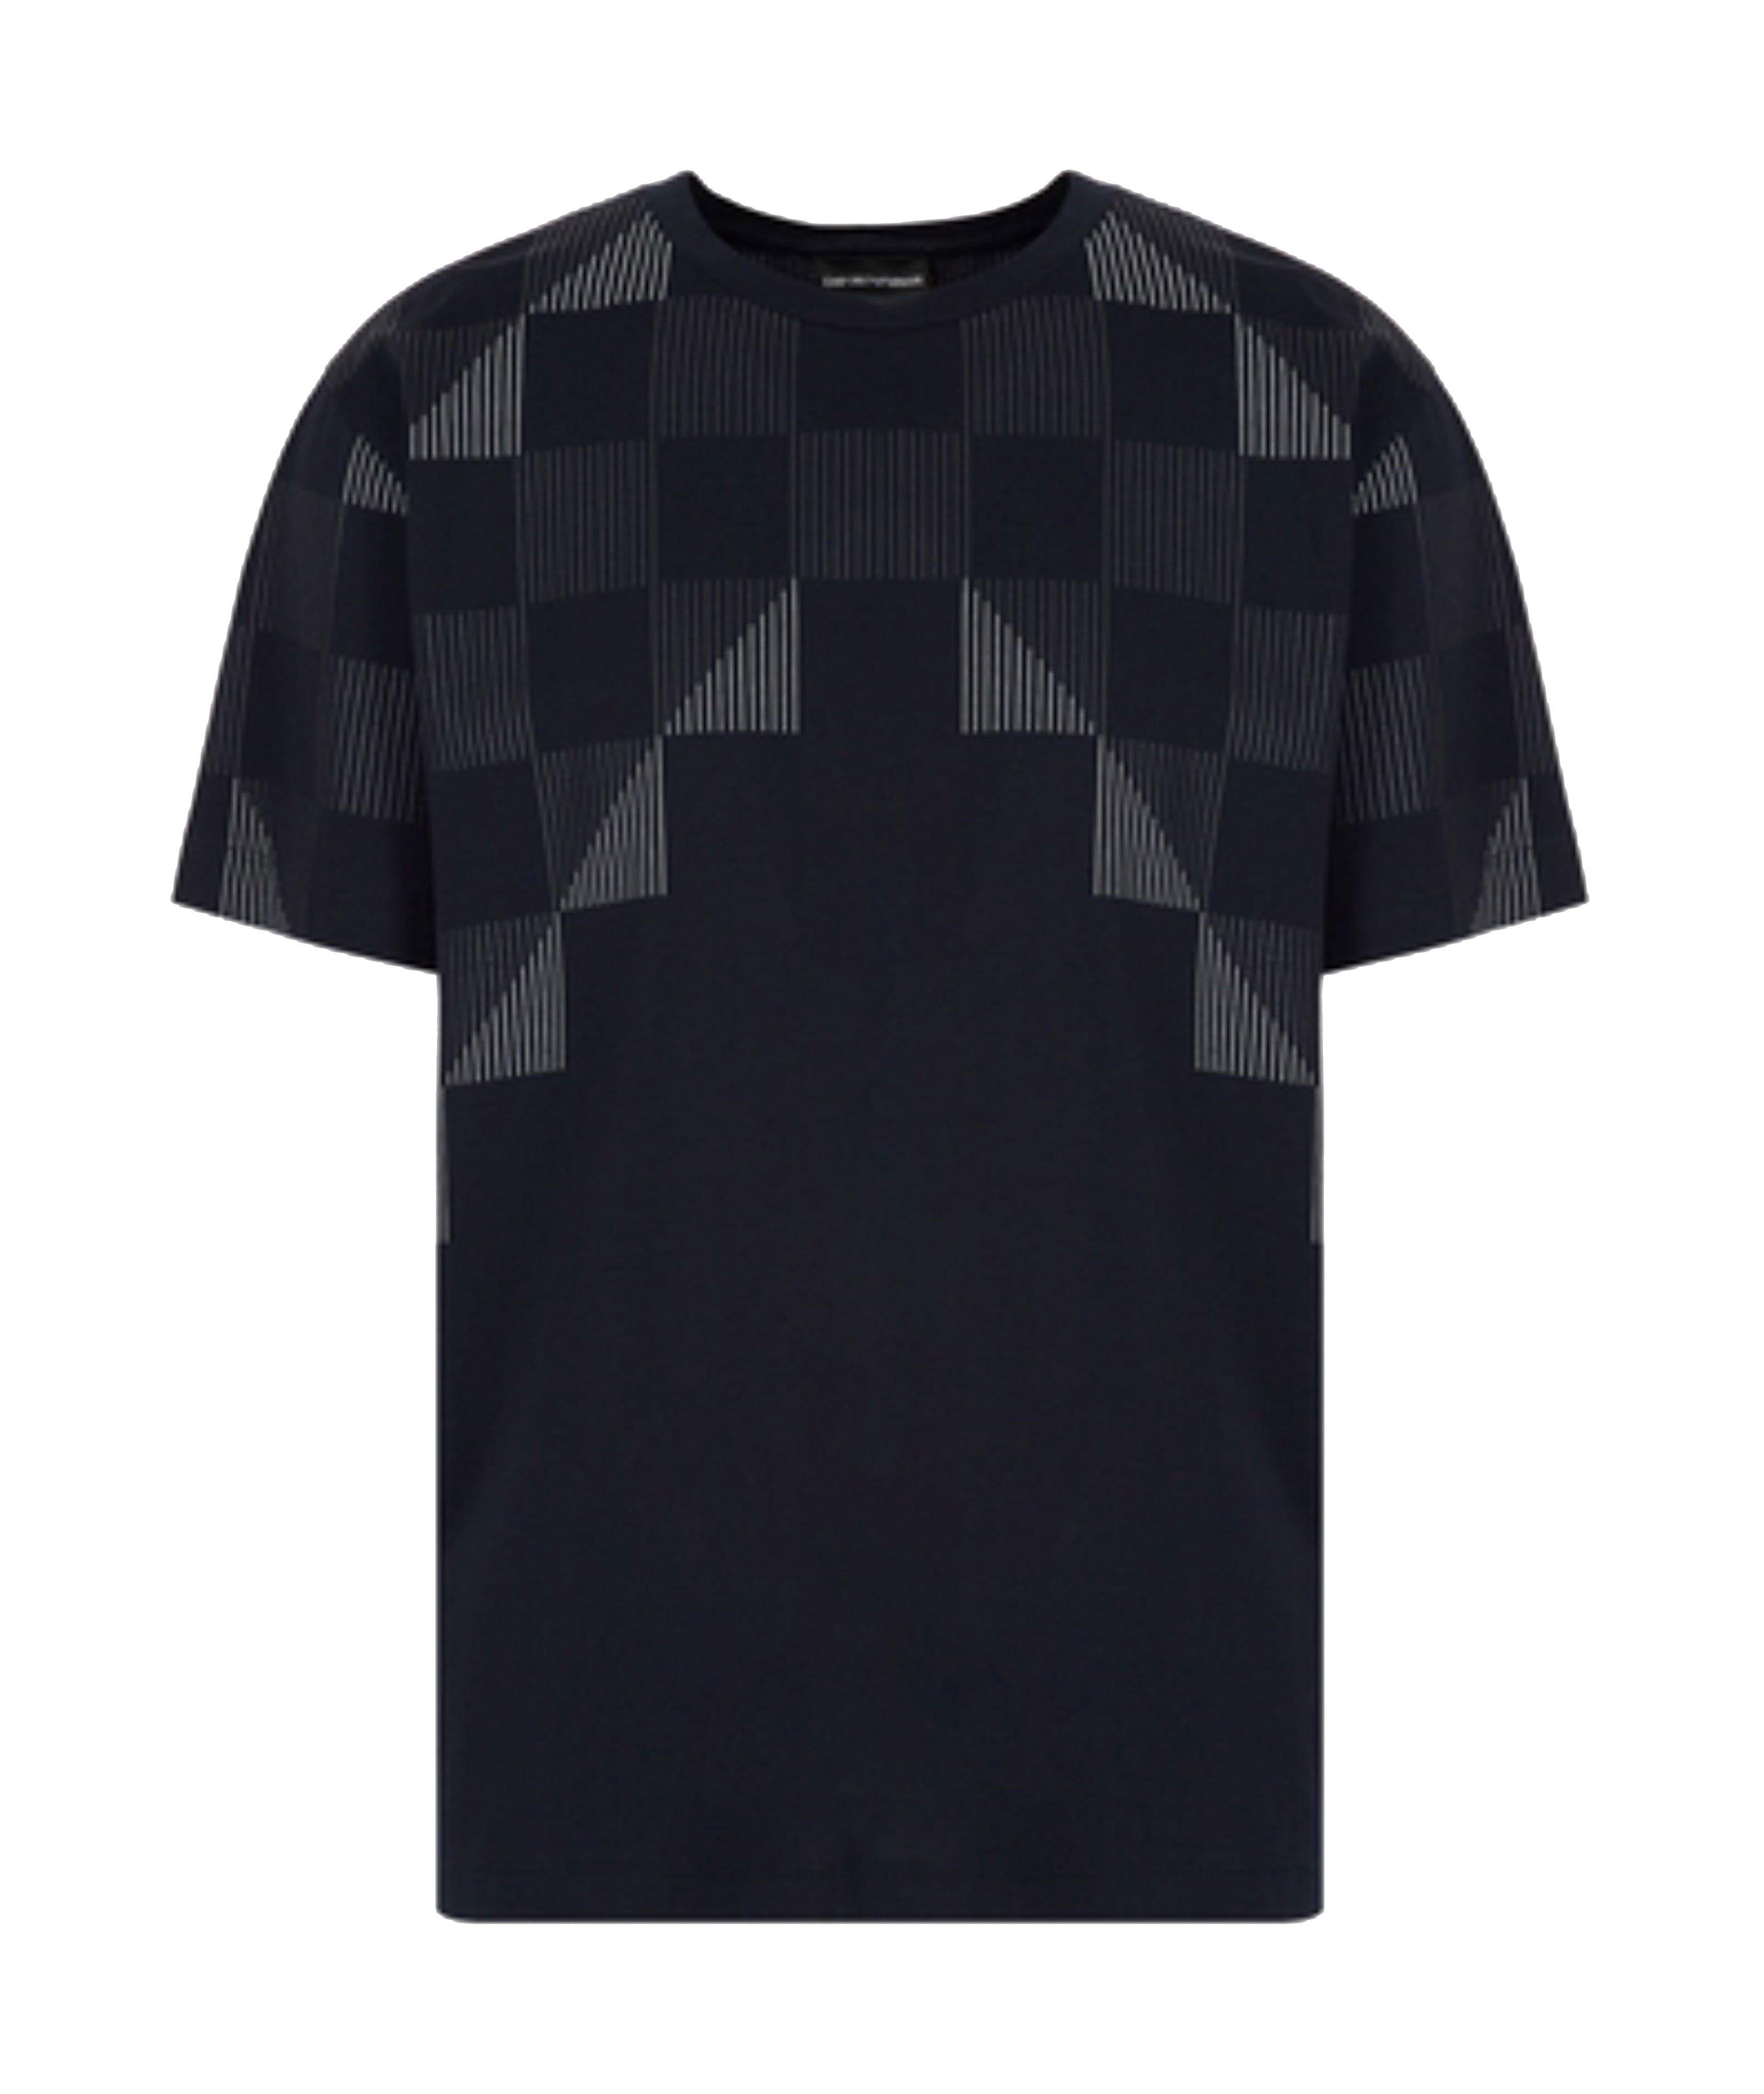 T-shirt en jersey de coton à motif géométrique image 0